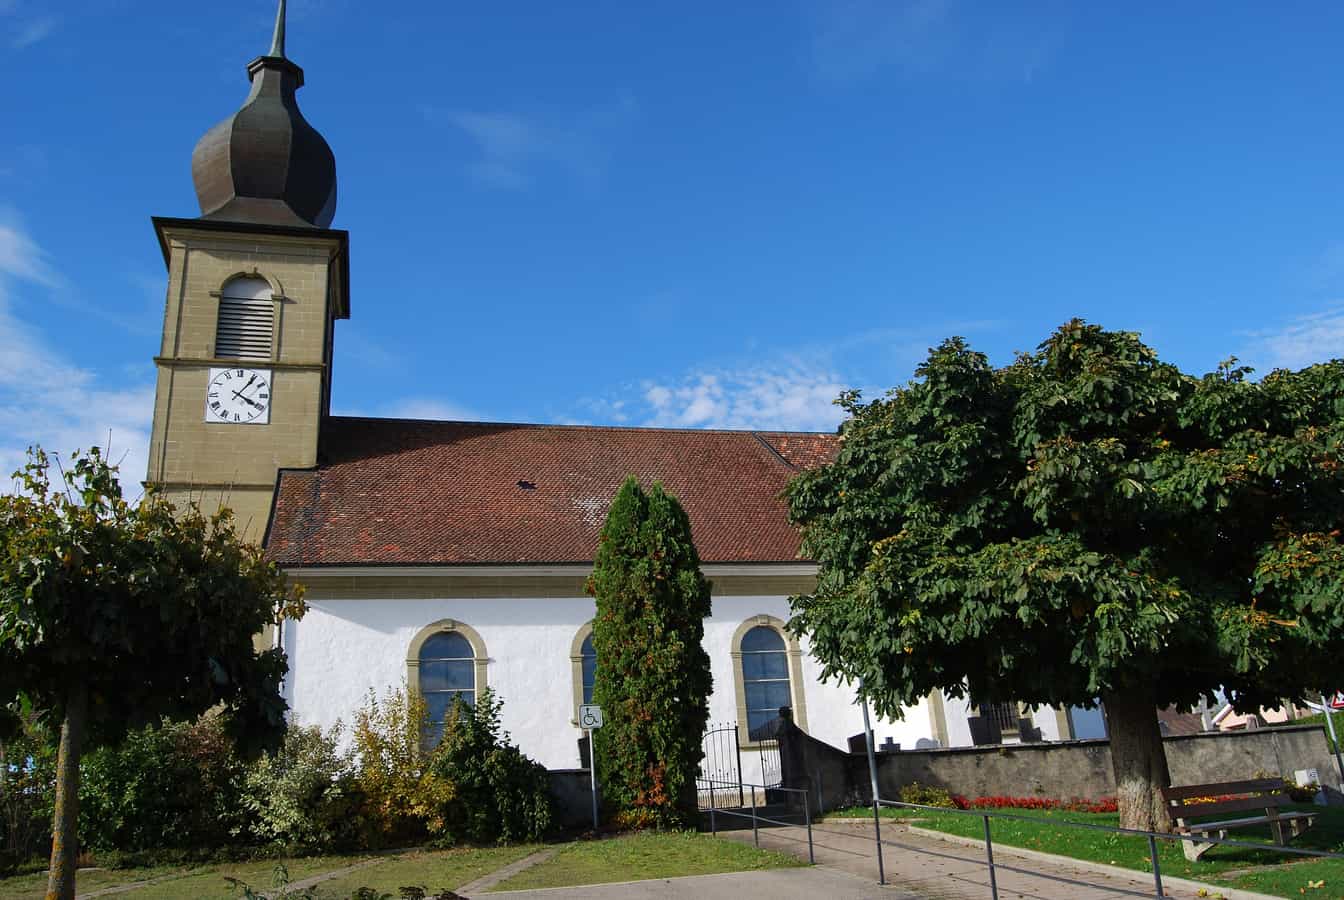 Katholische Kirche von Lentigny, Gemeinde La Brillaz, Kanton Freiburg, Schweiz